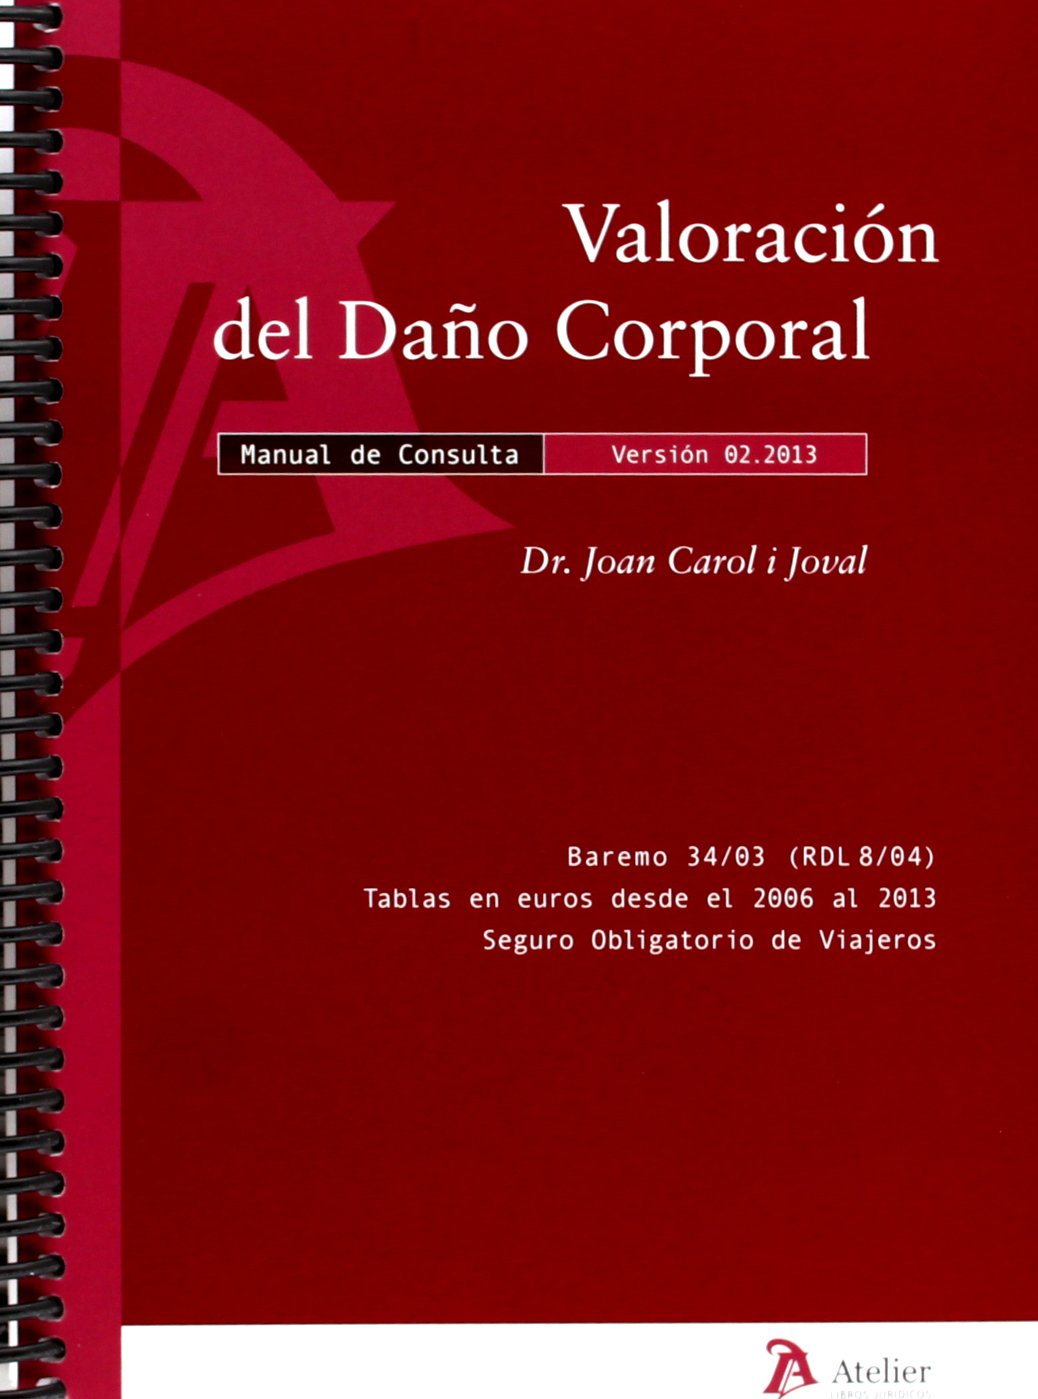 VALORACION DEL DAÑO CORPORAL - MANUAL DE CONSULTA